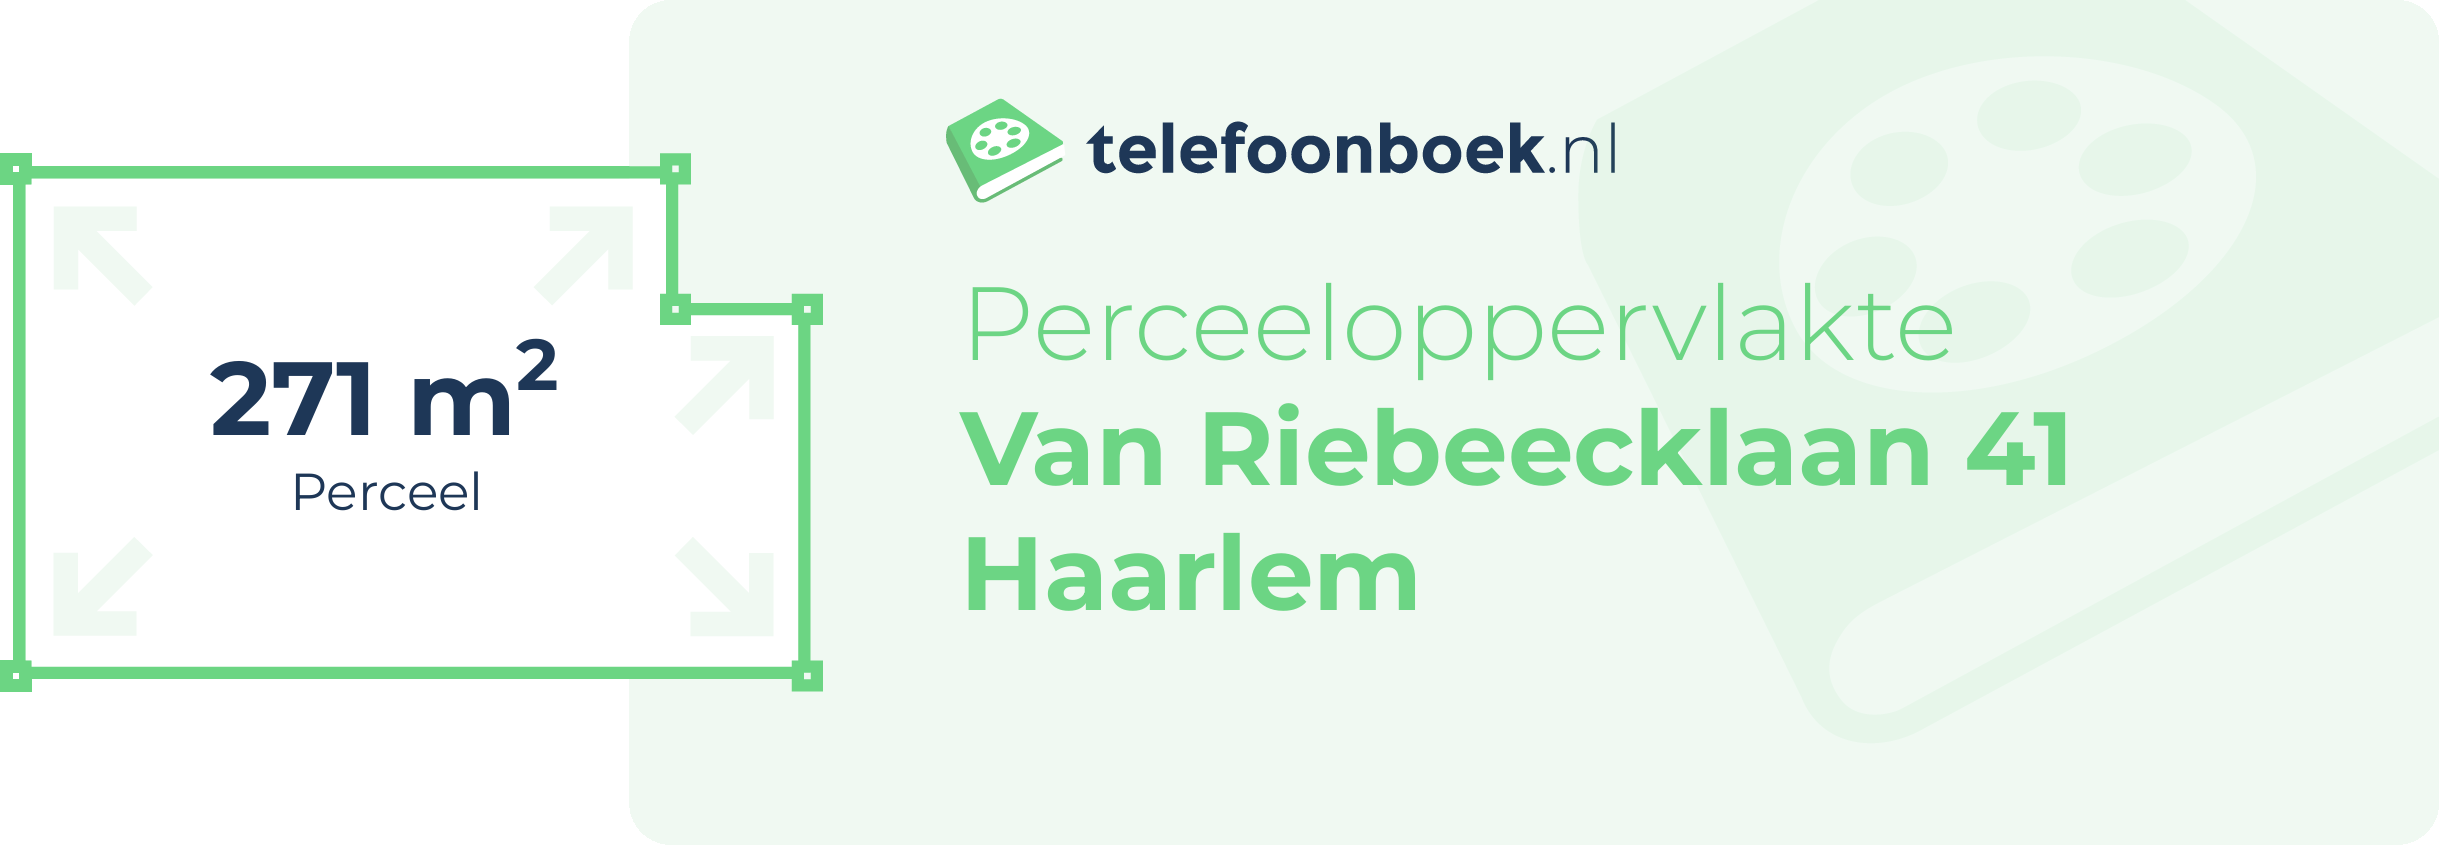 Perceeloppervlakte Van Riebeecklaan 41 Haarlem